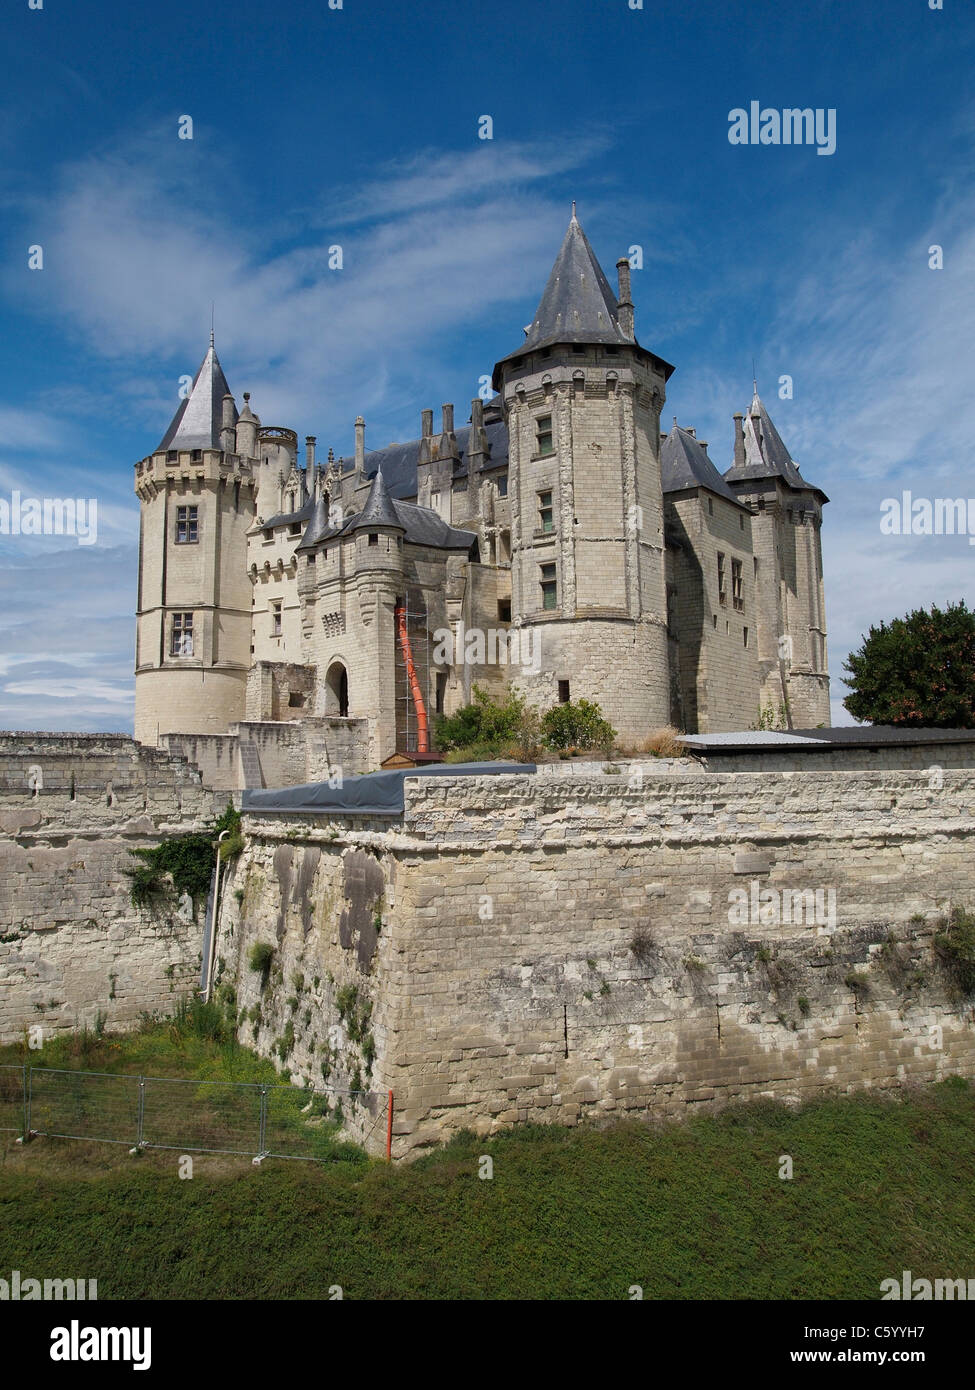 The Chateau de Saumur castle, Loire valley, France Stock Photo